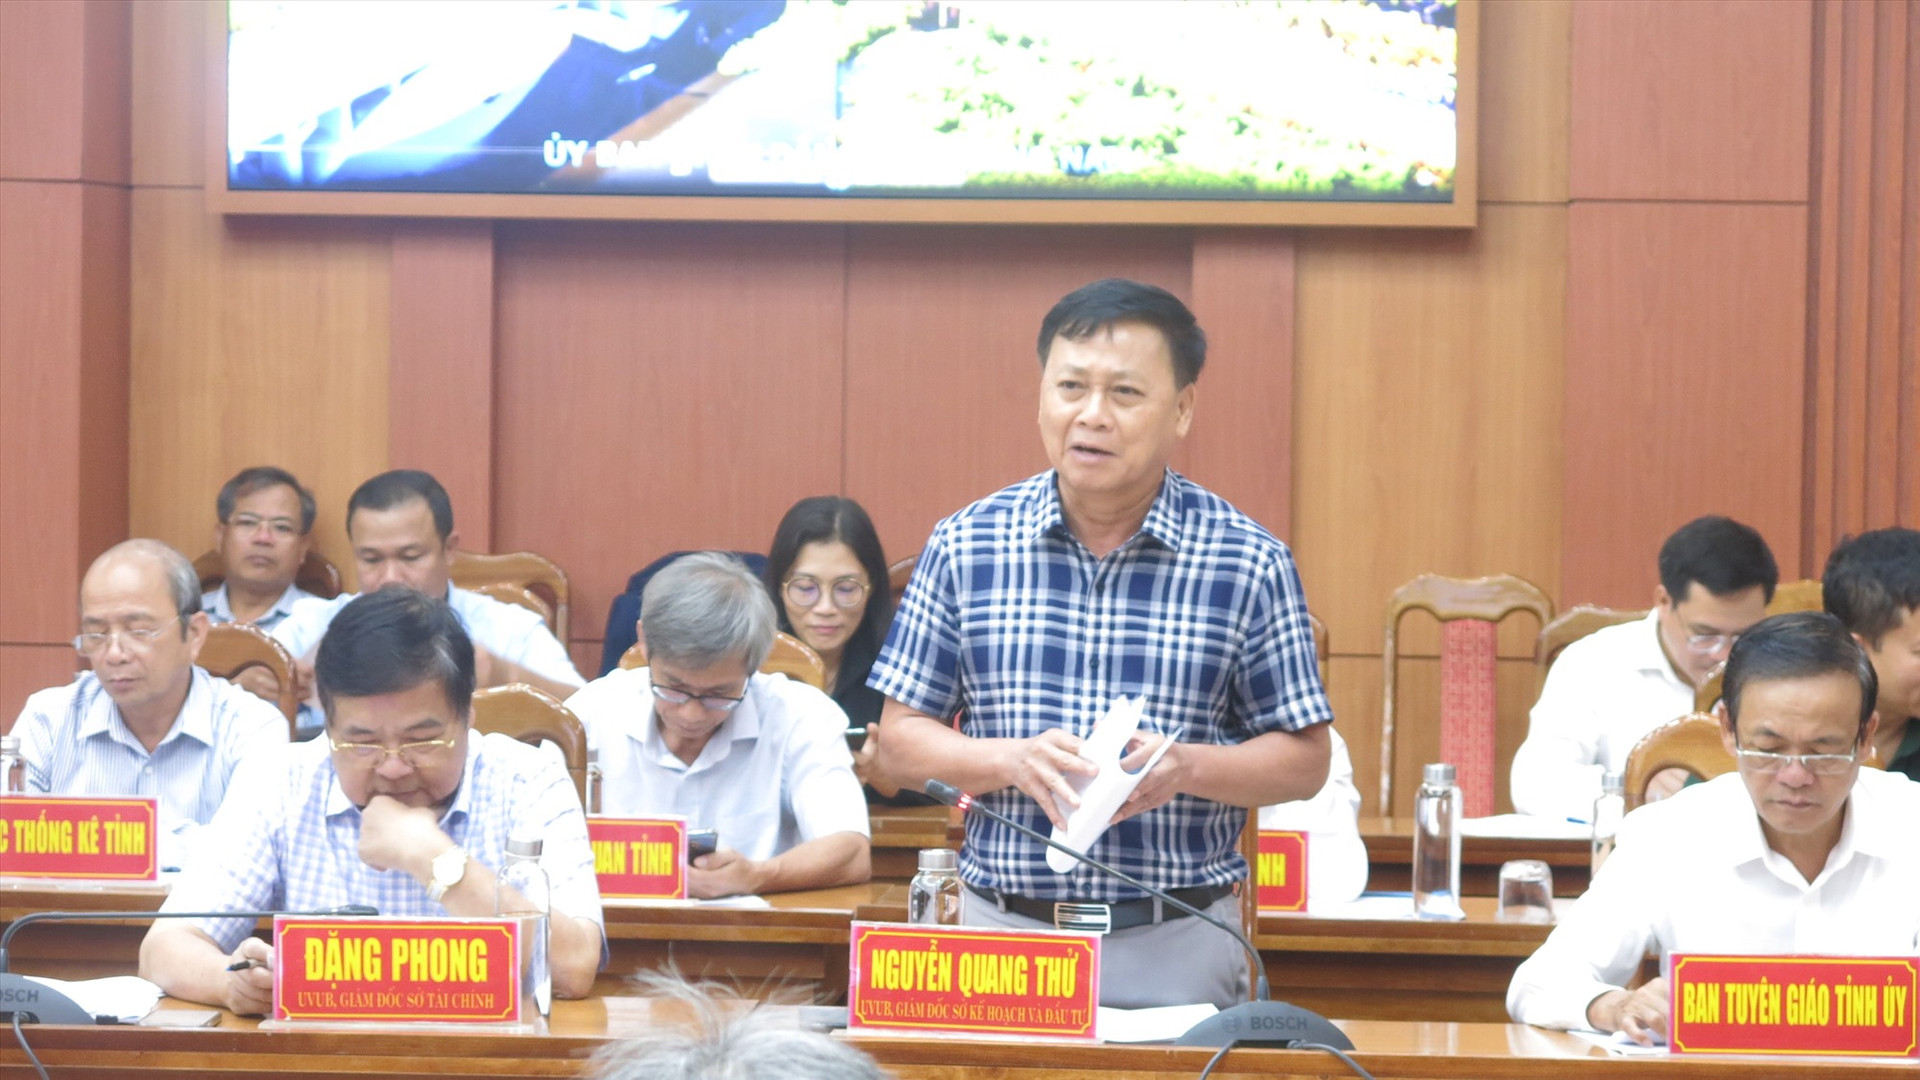 Giám đốc Sở KH&ĐT Nguyễn Quang Thử trình bày tiến độ giải ngân vốn đầu tư